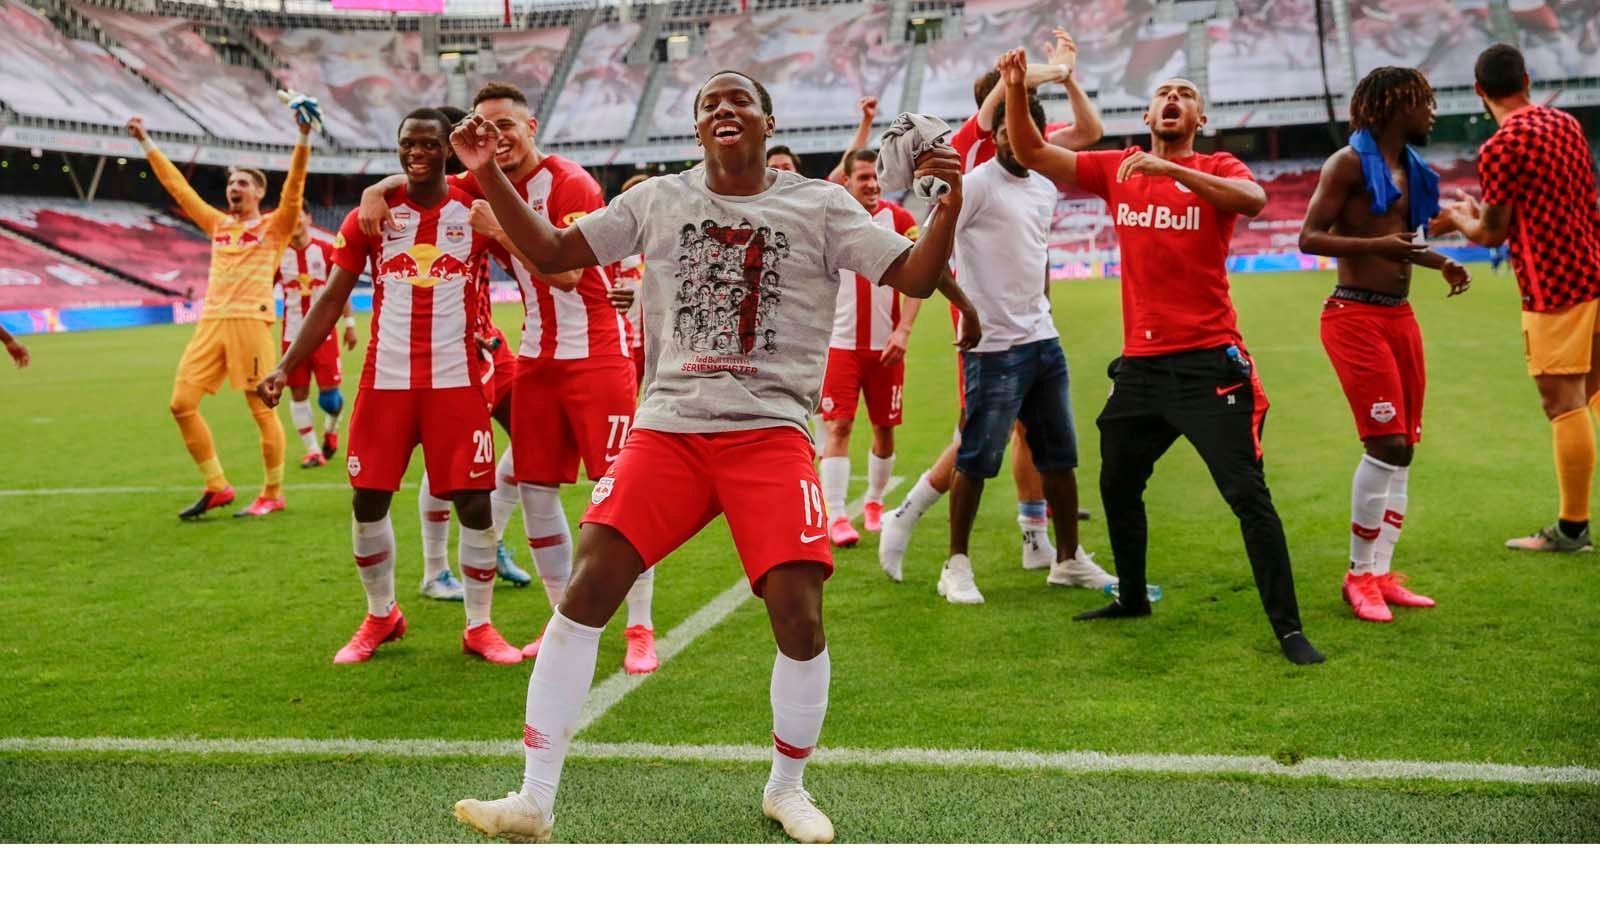 
                <strong>Österreich: RB Salzburg</strong><br>
                Zum siebten Mal in Folge krönte sich in Österreich RB Salzburg zum Meister. Damit befinden sie sich auf den Spuren der Bayern, die den achten Titel in Folge eingefahren haben.
              